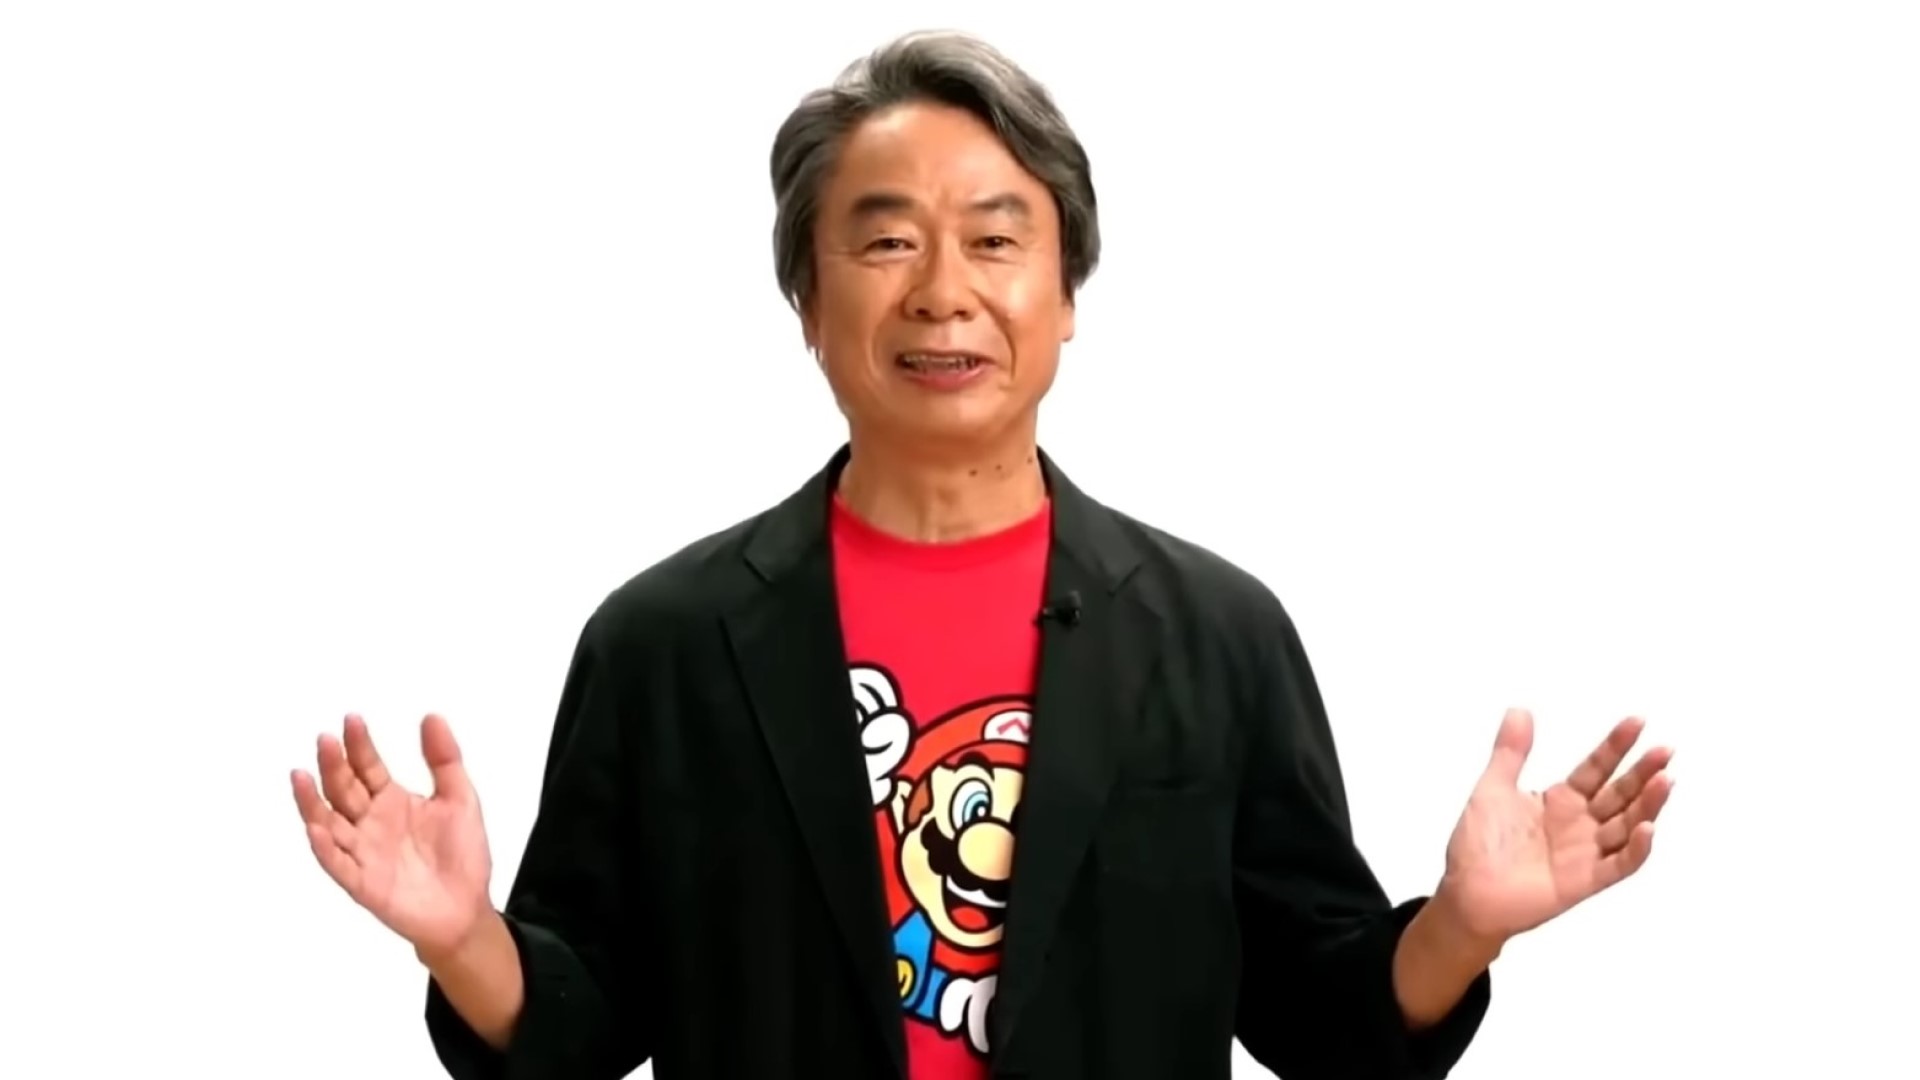 «Я не считаю себя геймдизайнером», — говорит создатель Mario and Zelda Сигэру Миямото.